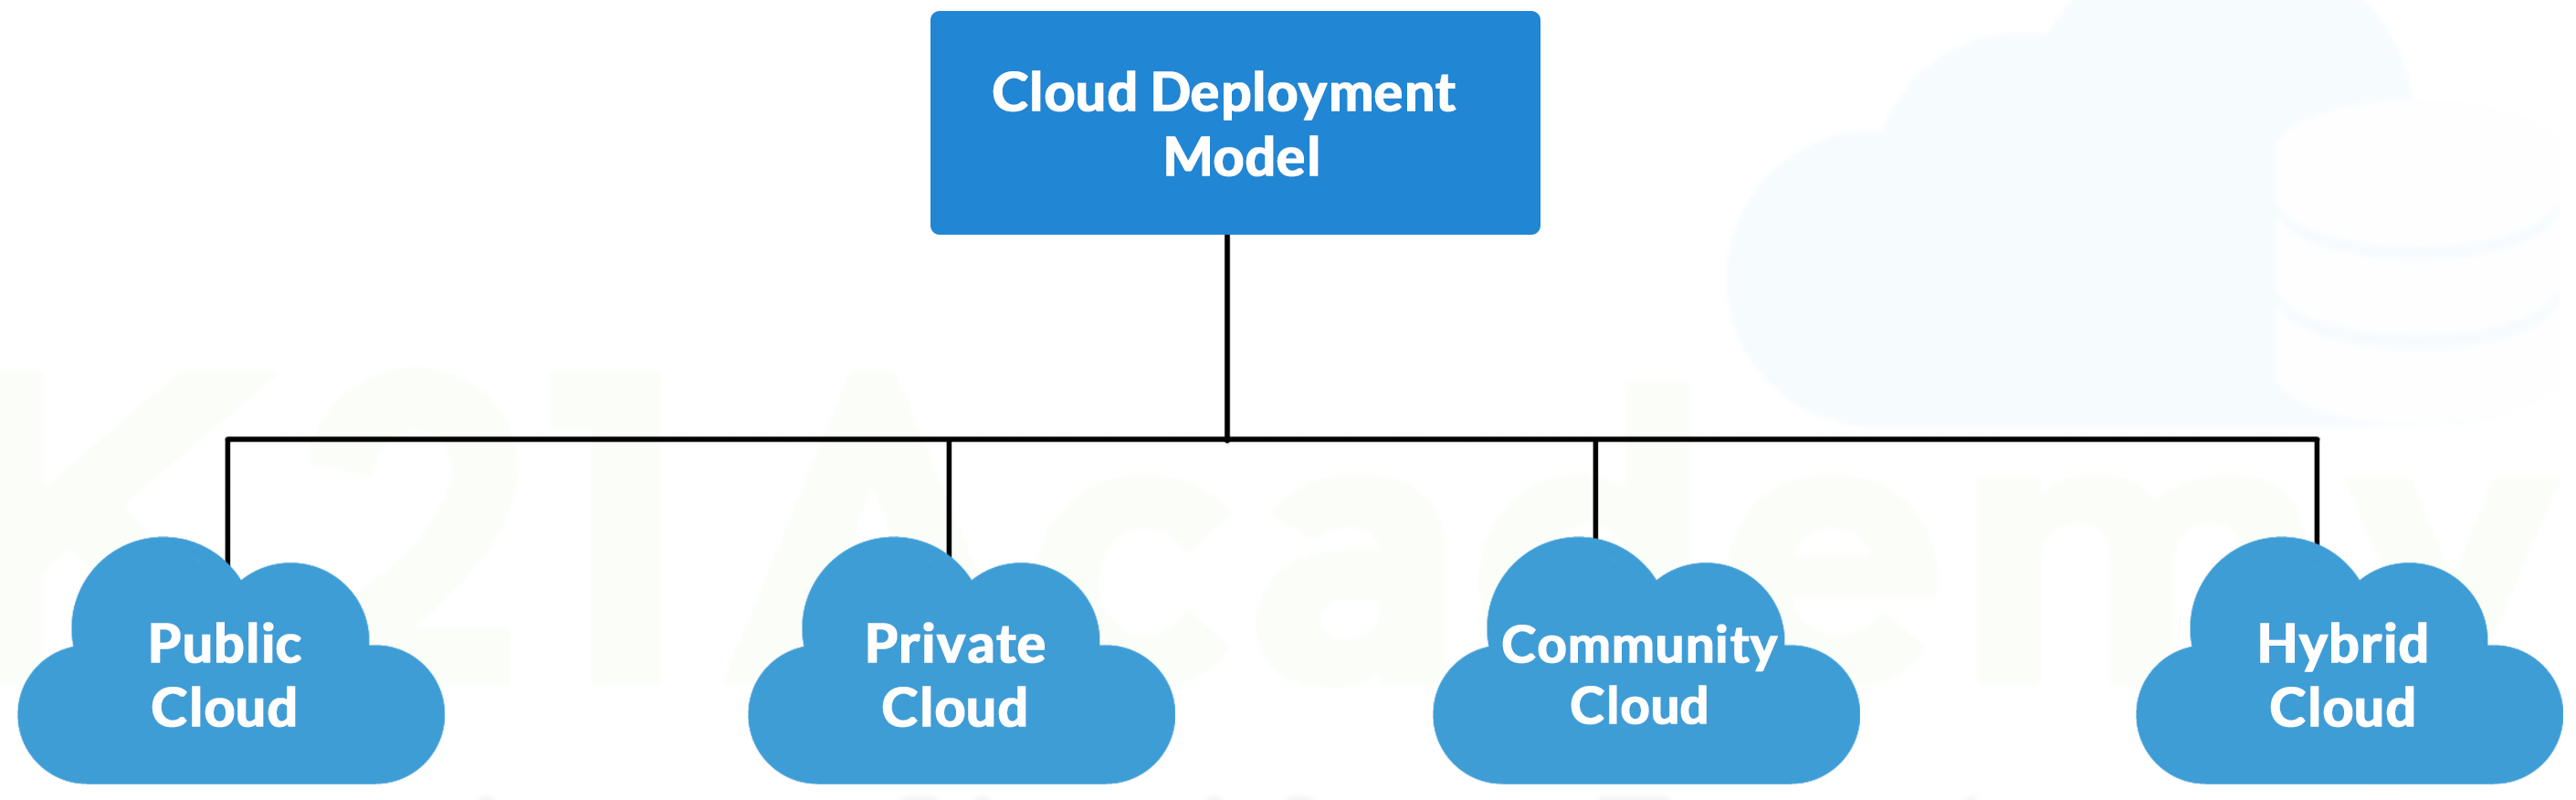 Public Cloud Deployment Model